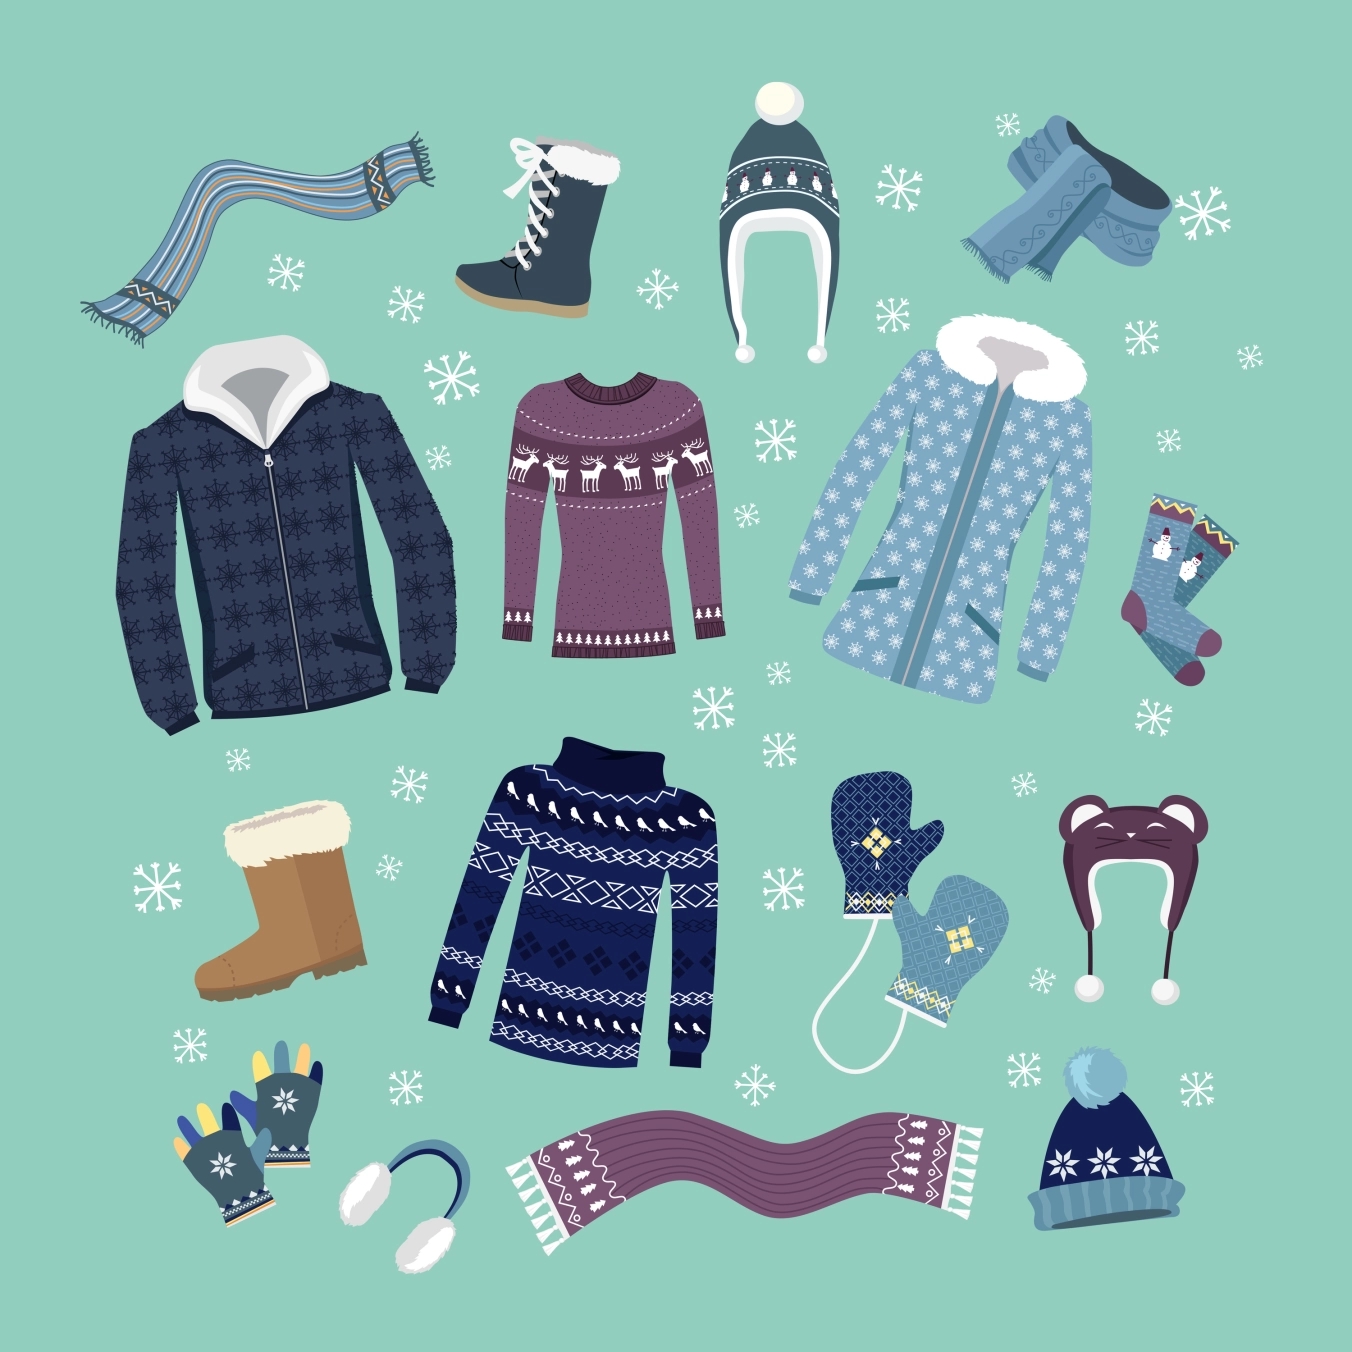 bigstock set of warm winter clothes des 115038152